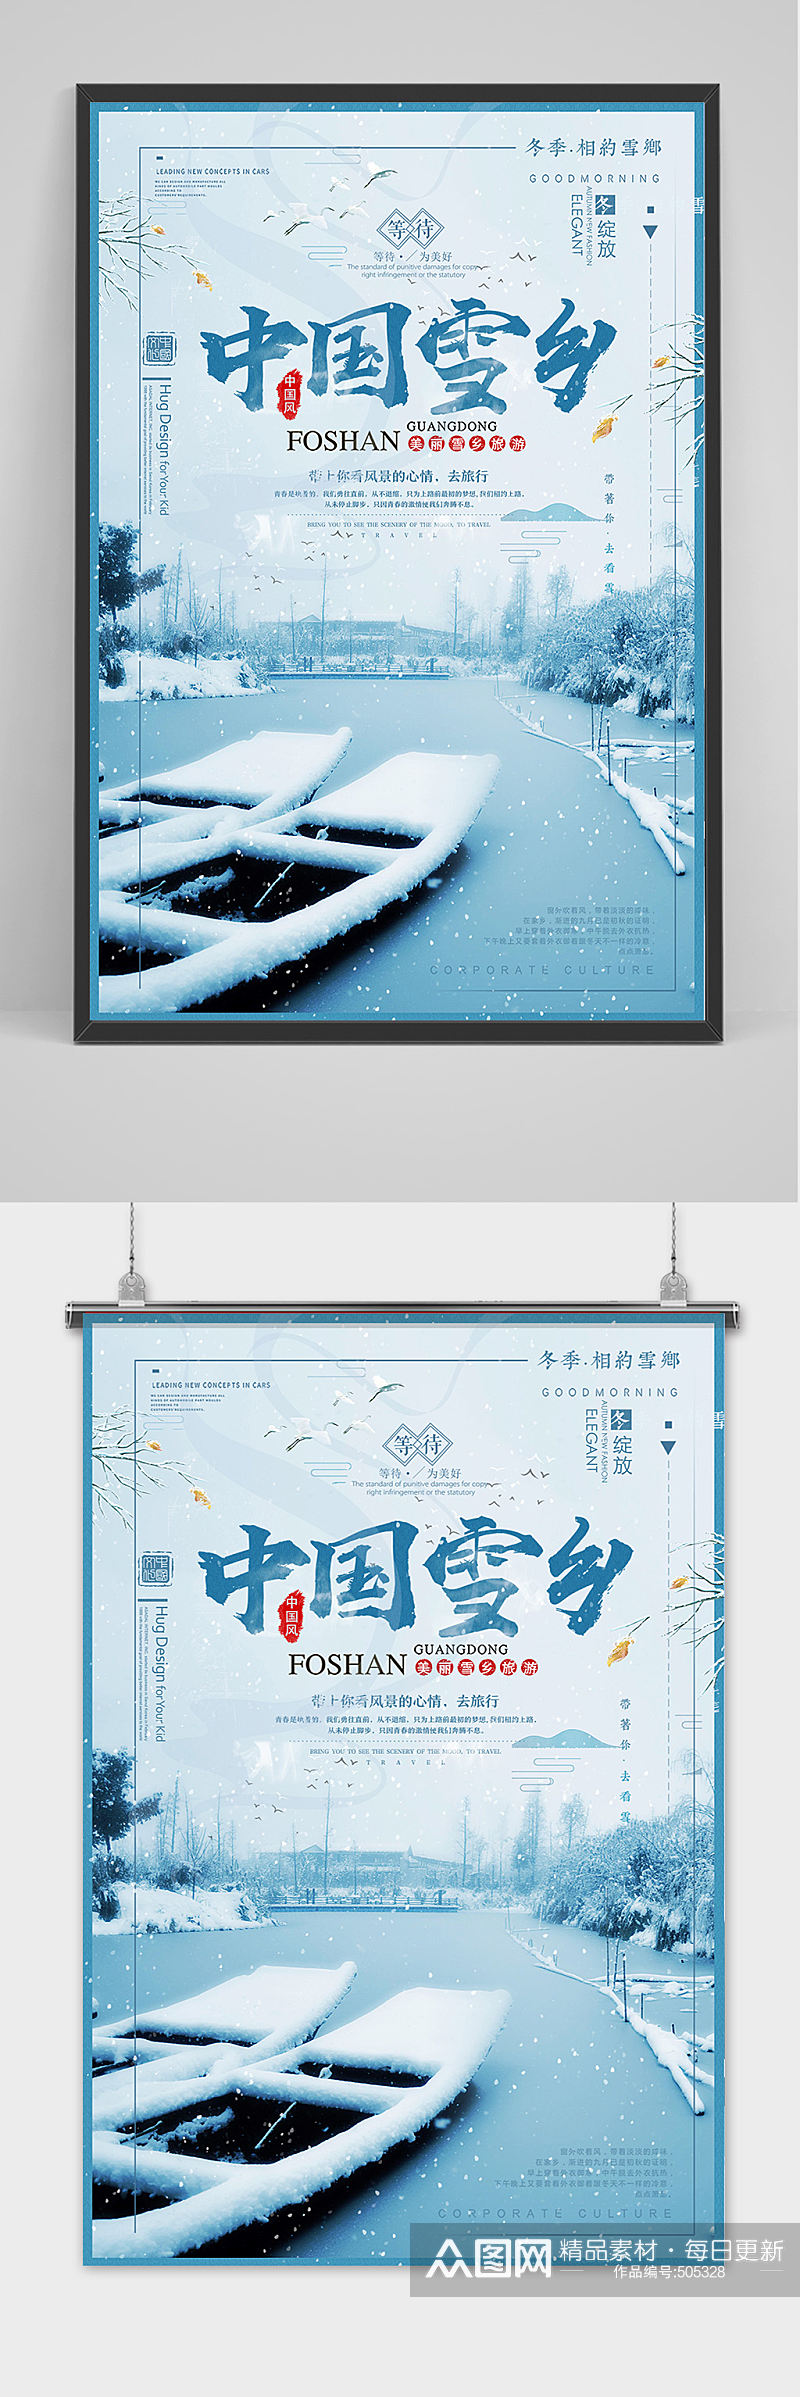 唯美创意黑龙江雪乡海报设计素材